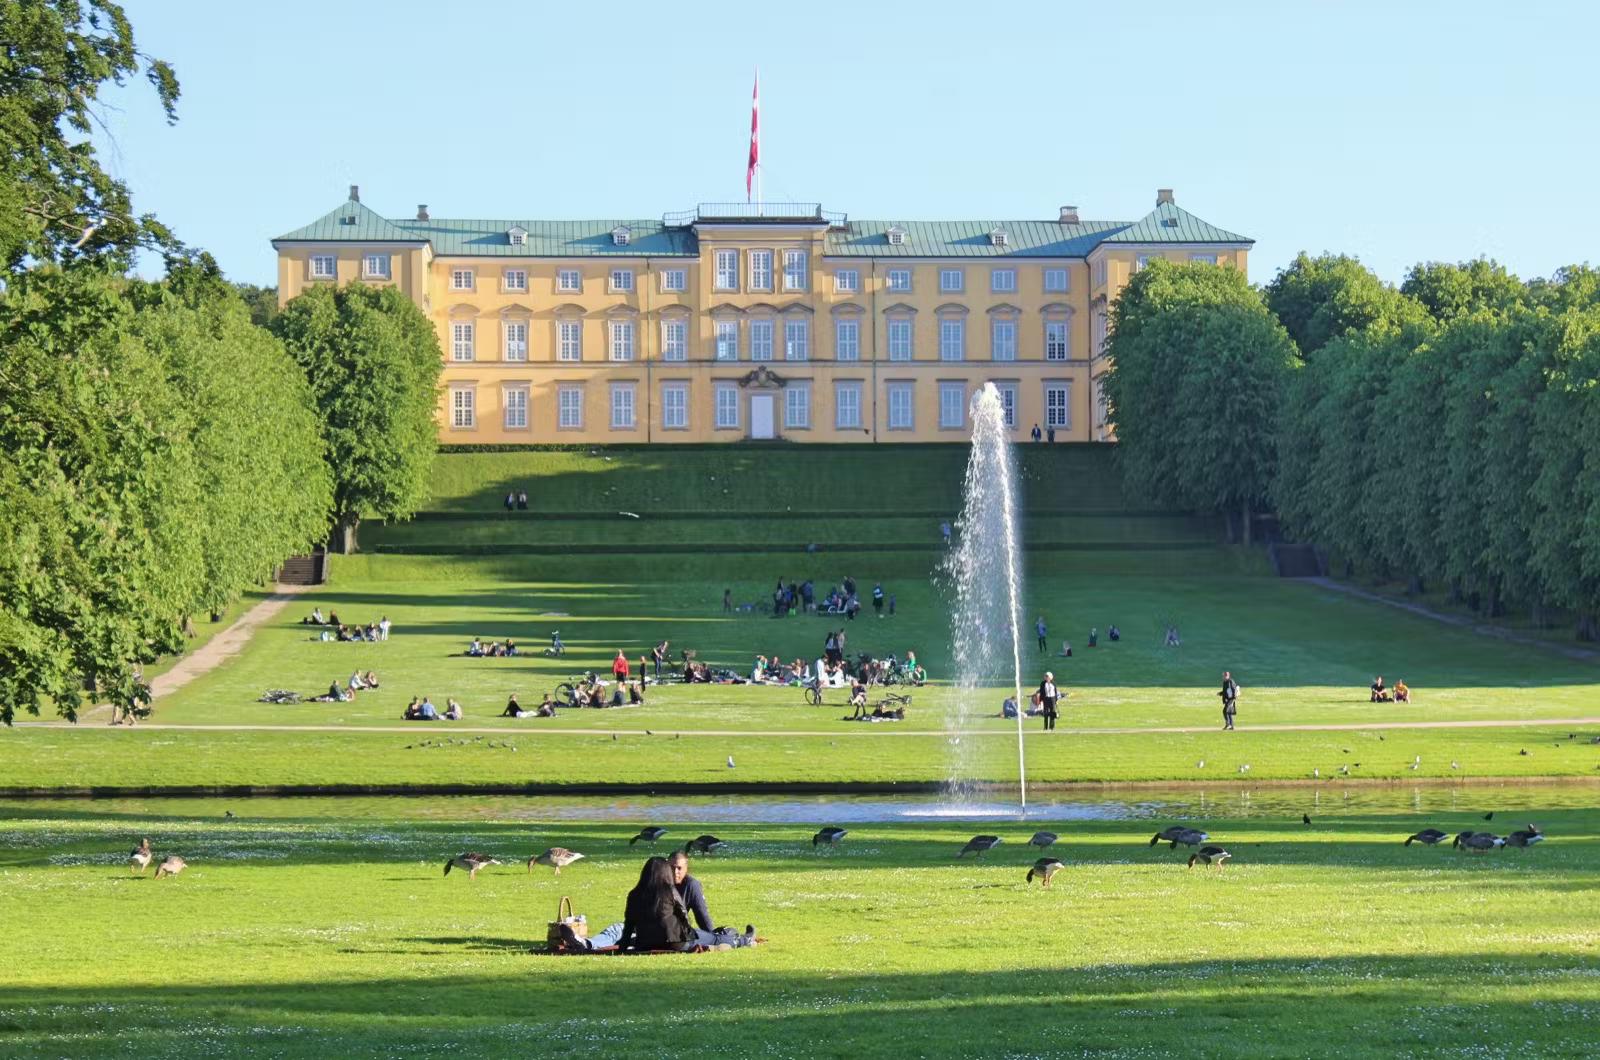 Grupper av människor sitter utspridda längs den vidsträckta gräsmattan och fontänen framför Frederiksbergs slott vid Frederiksberg Have.  Trädgården ligger på 32 hektar mark. 